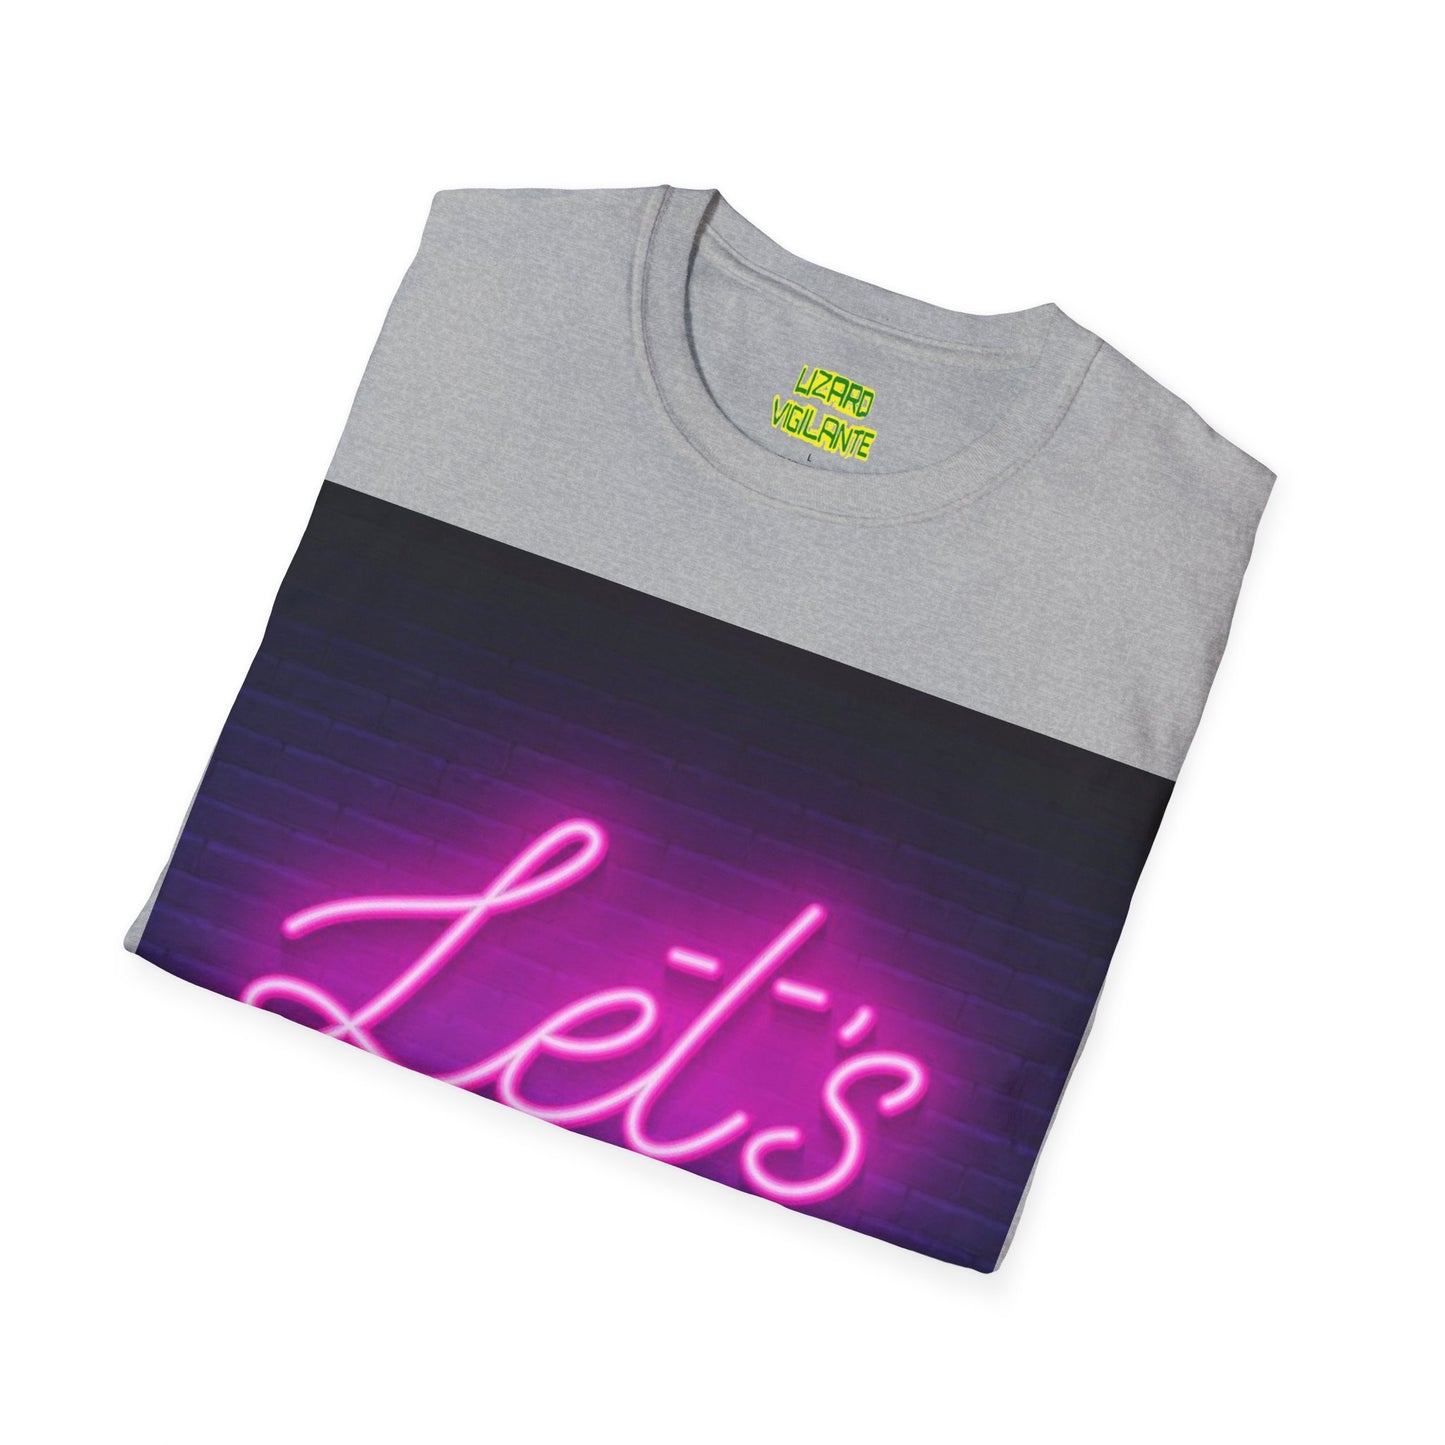 Let's Party Neon Unisex Softstyle T-Shirt - Lizard Vigilante